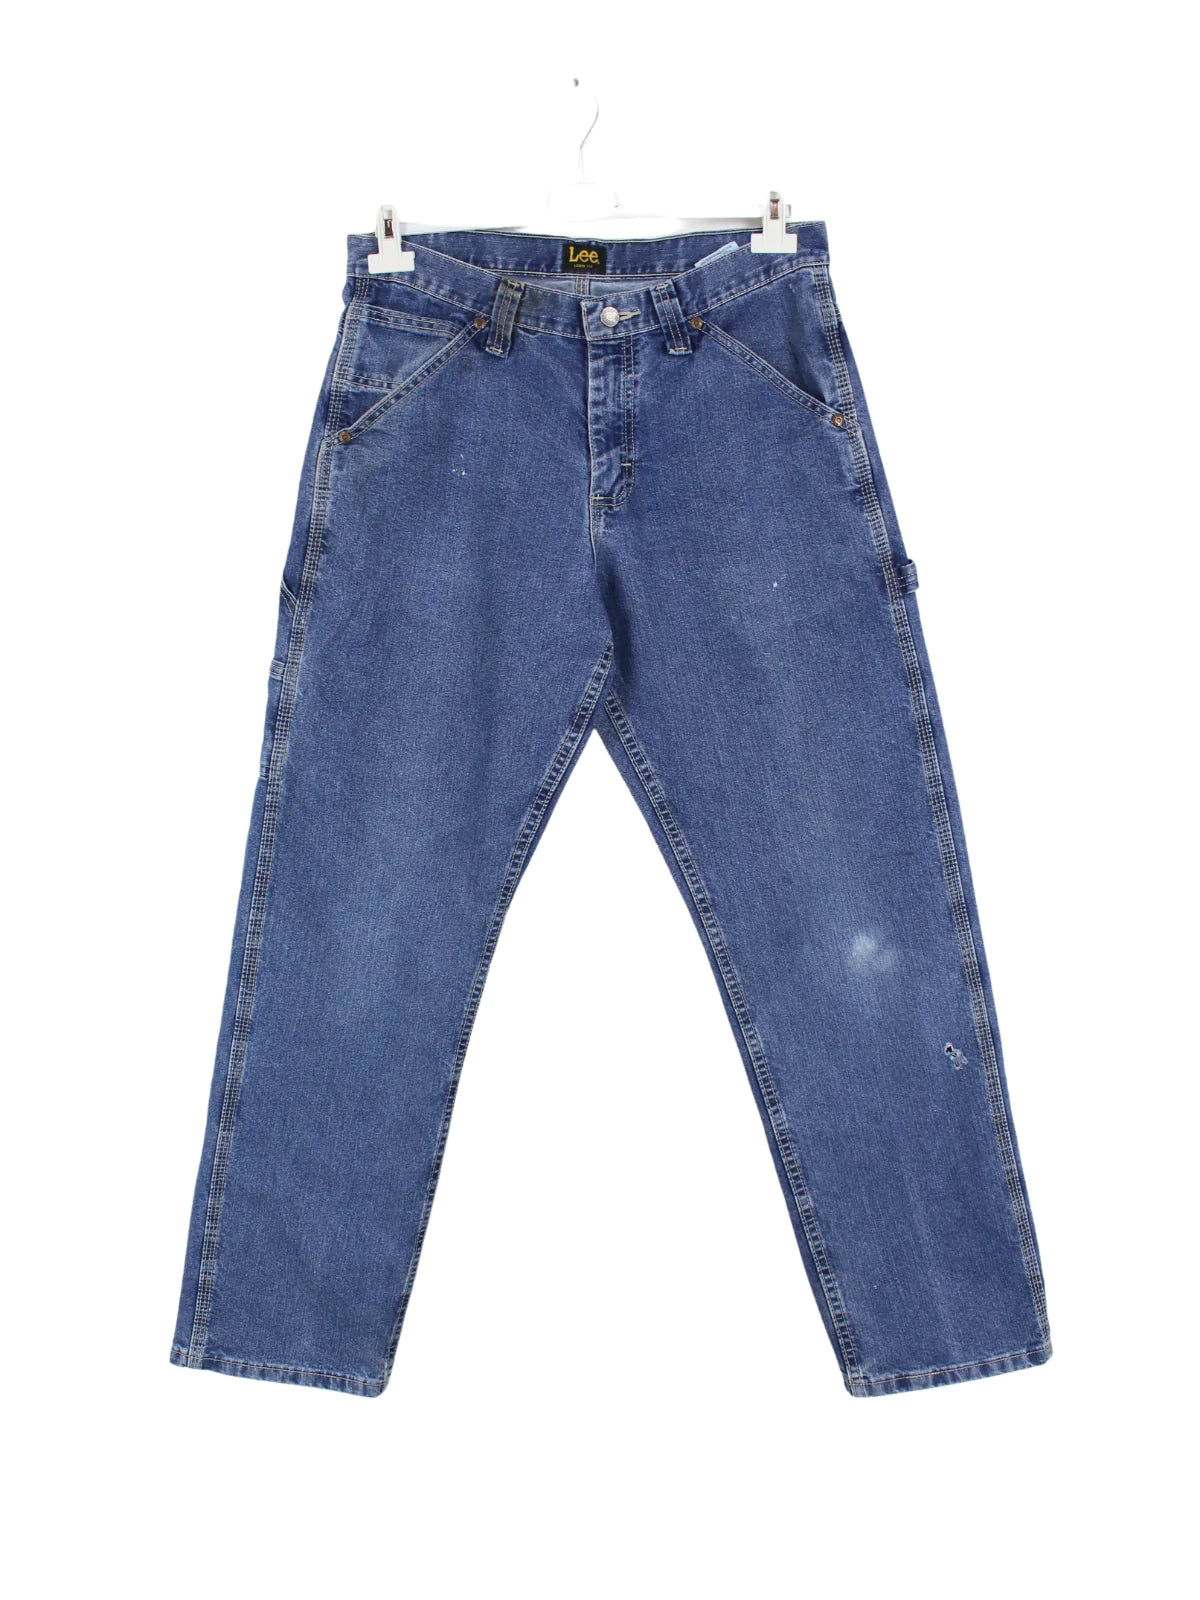 Lee Carpenter Jeans Blau W30 L30